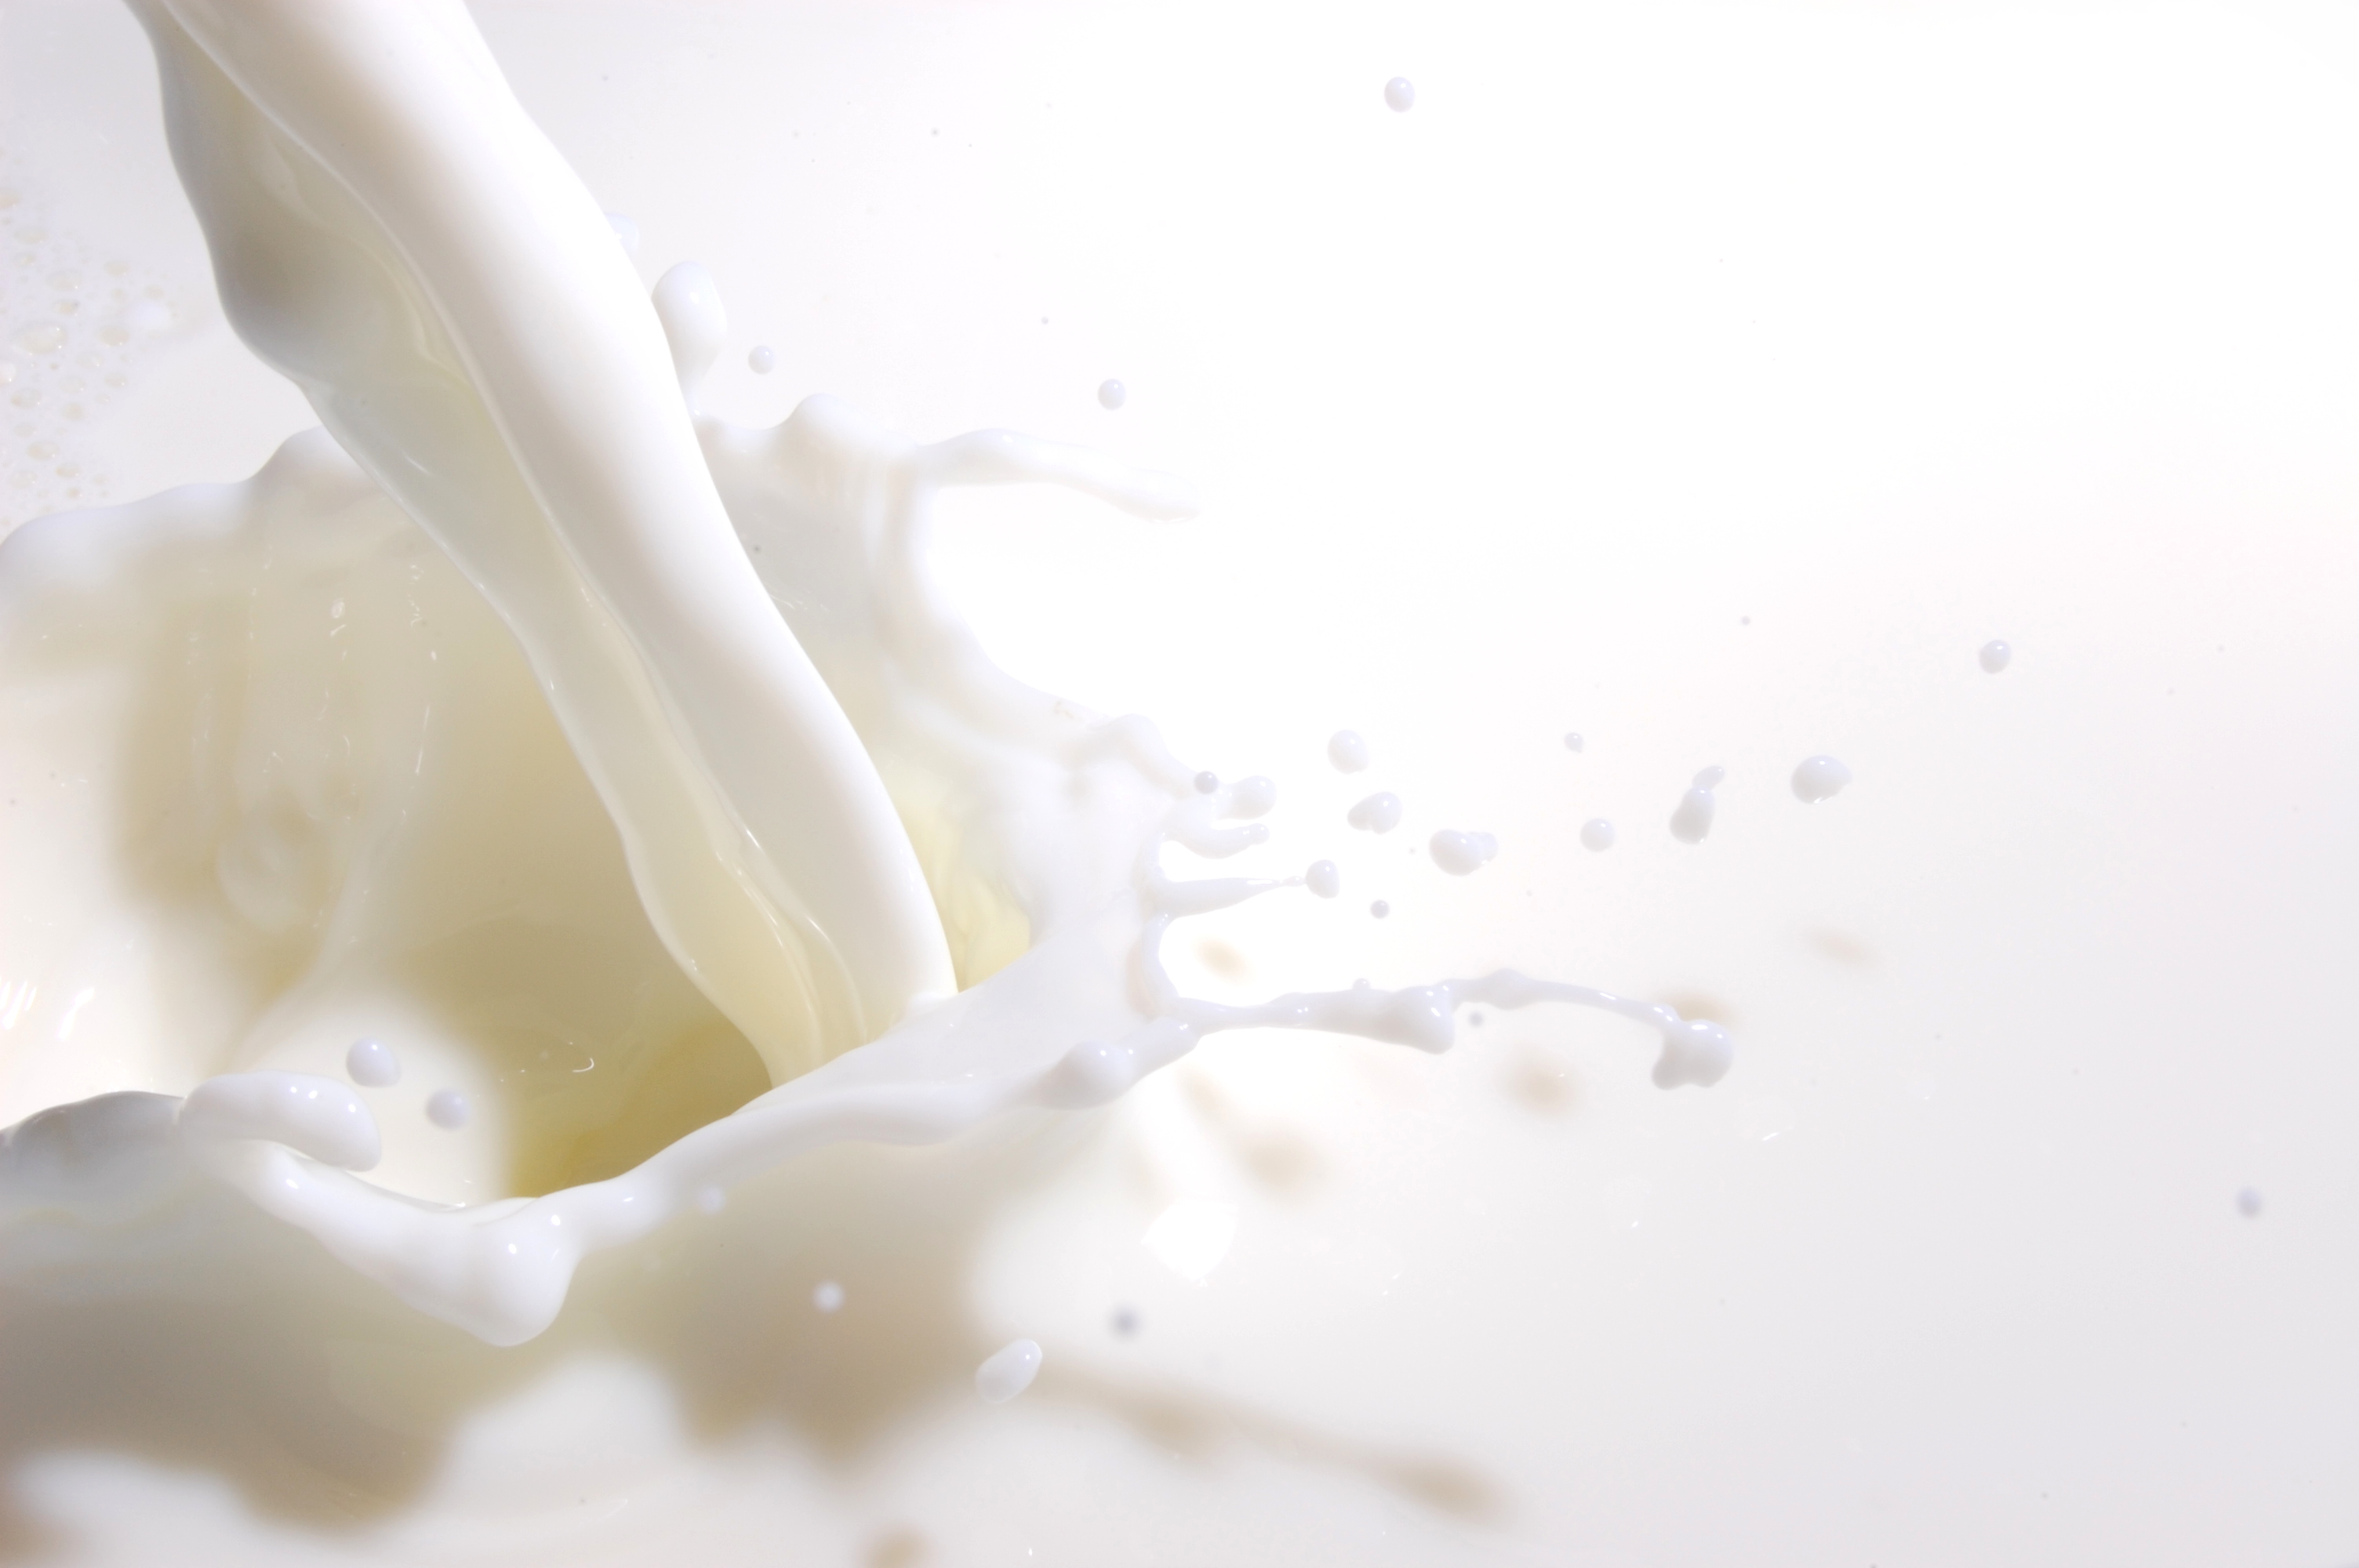 Recepción nacional de leche cruda anota importante caída al iniciar 2022